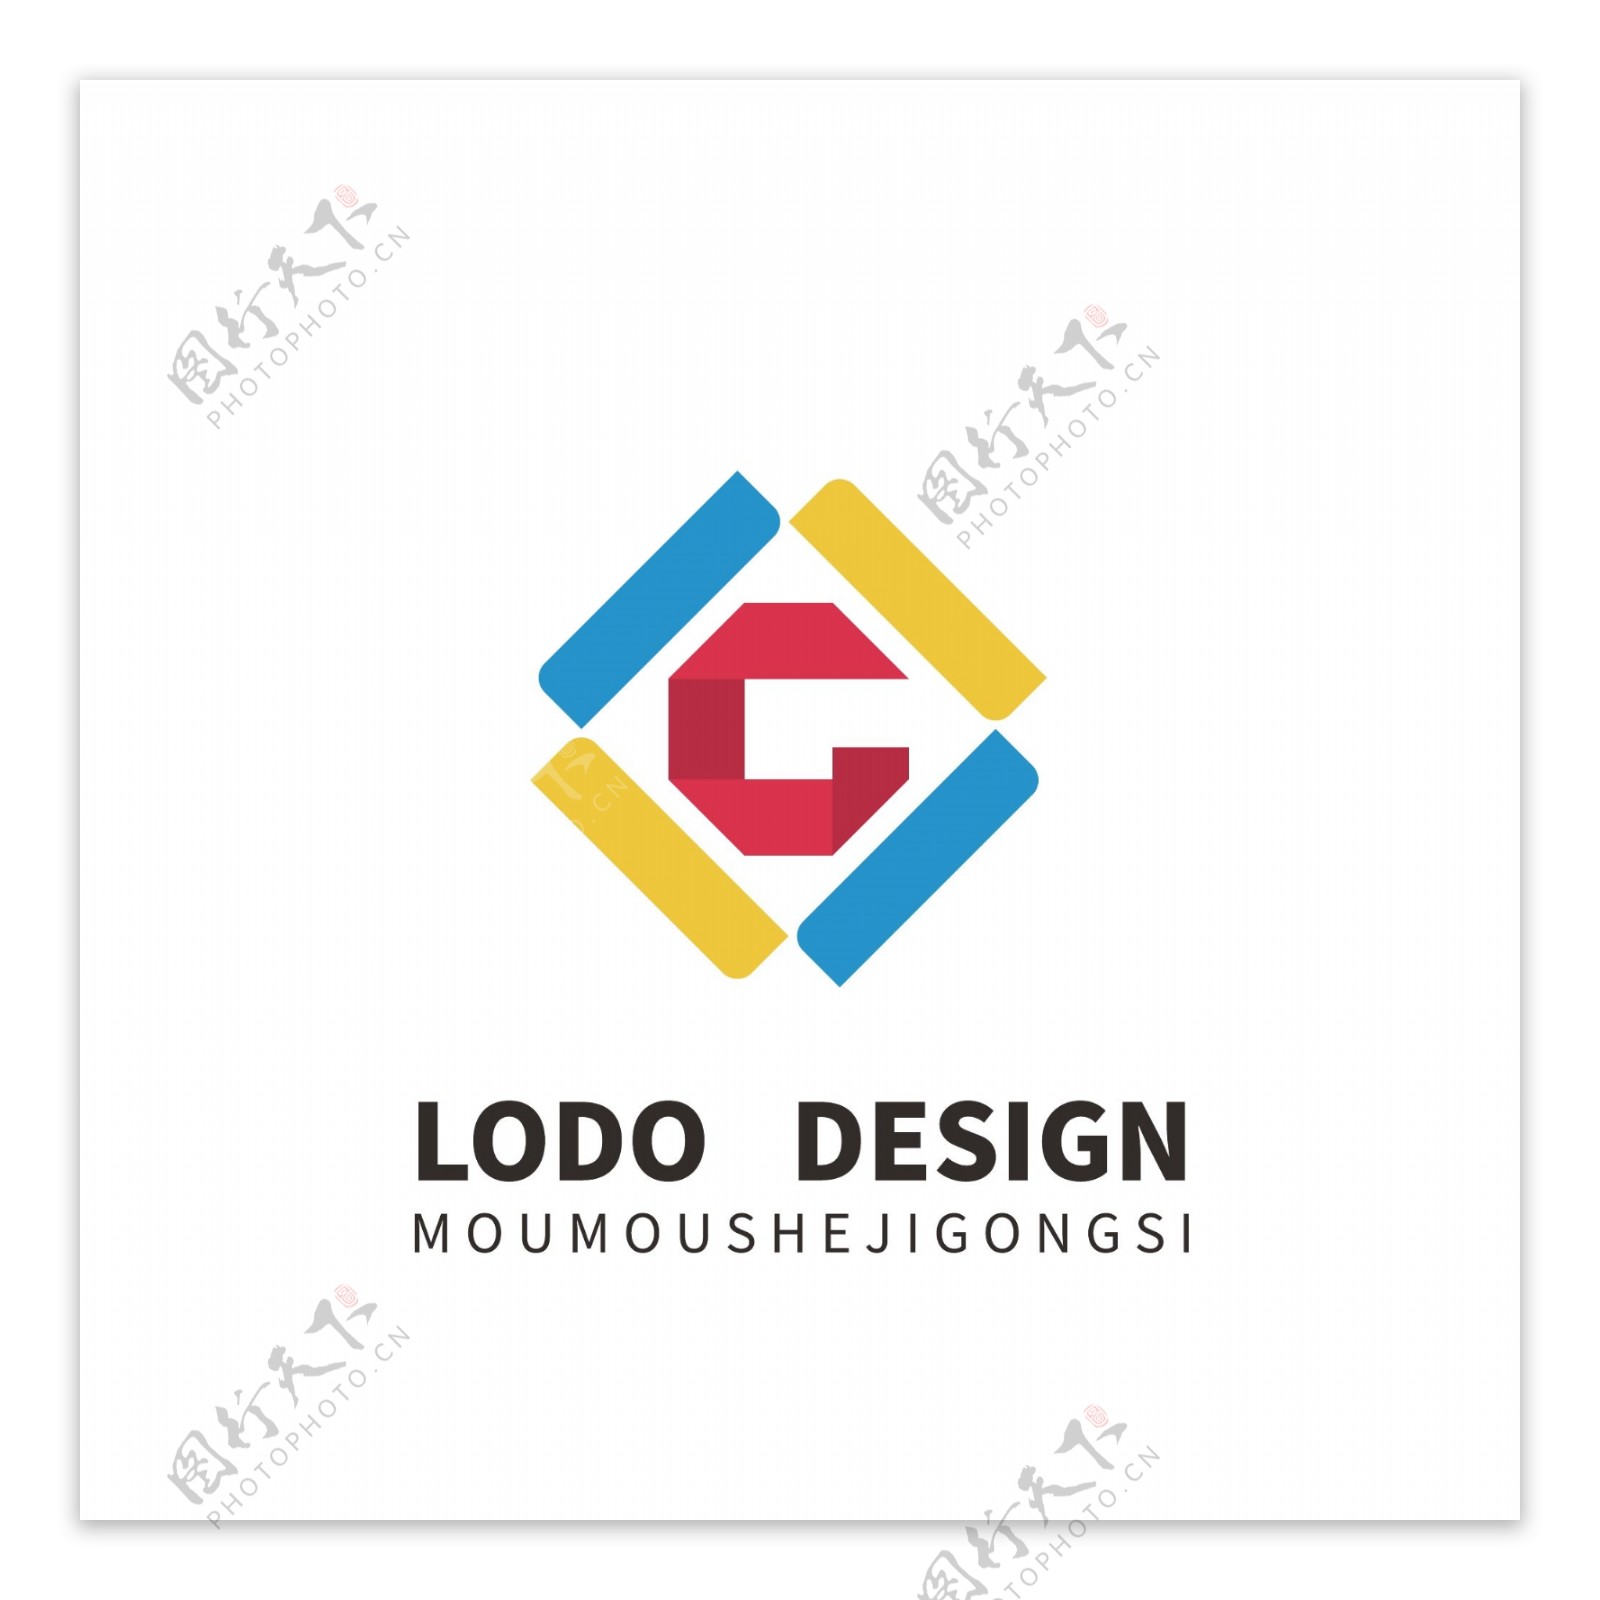 原创彩色字母LG设计logo